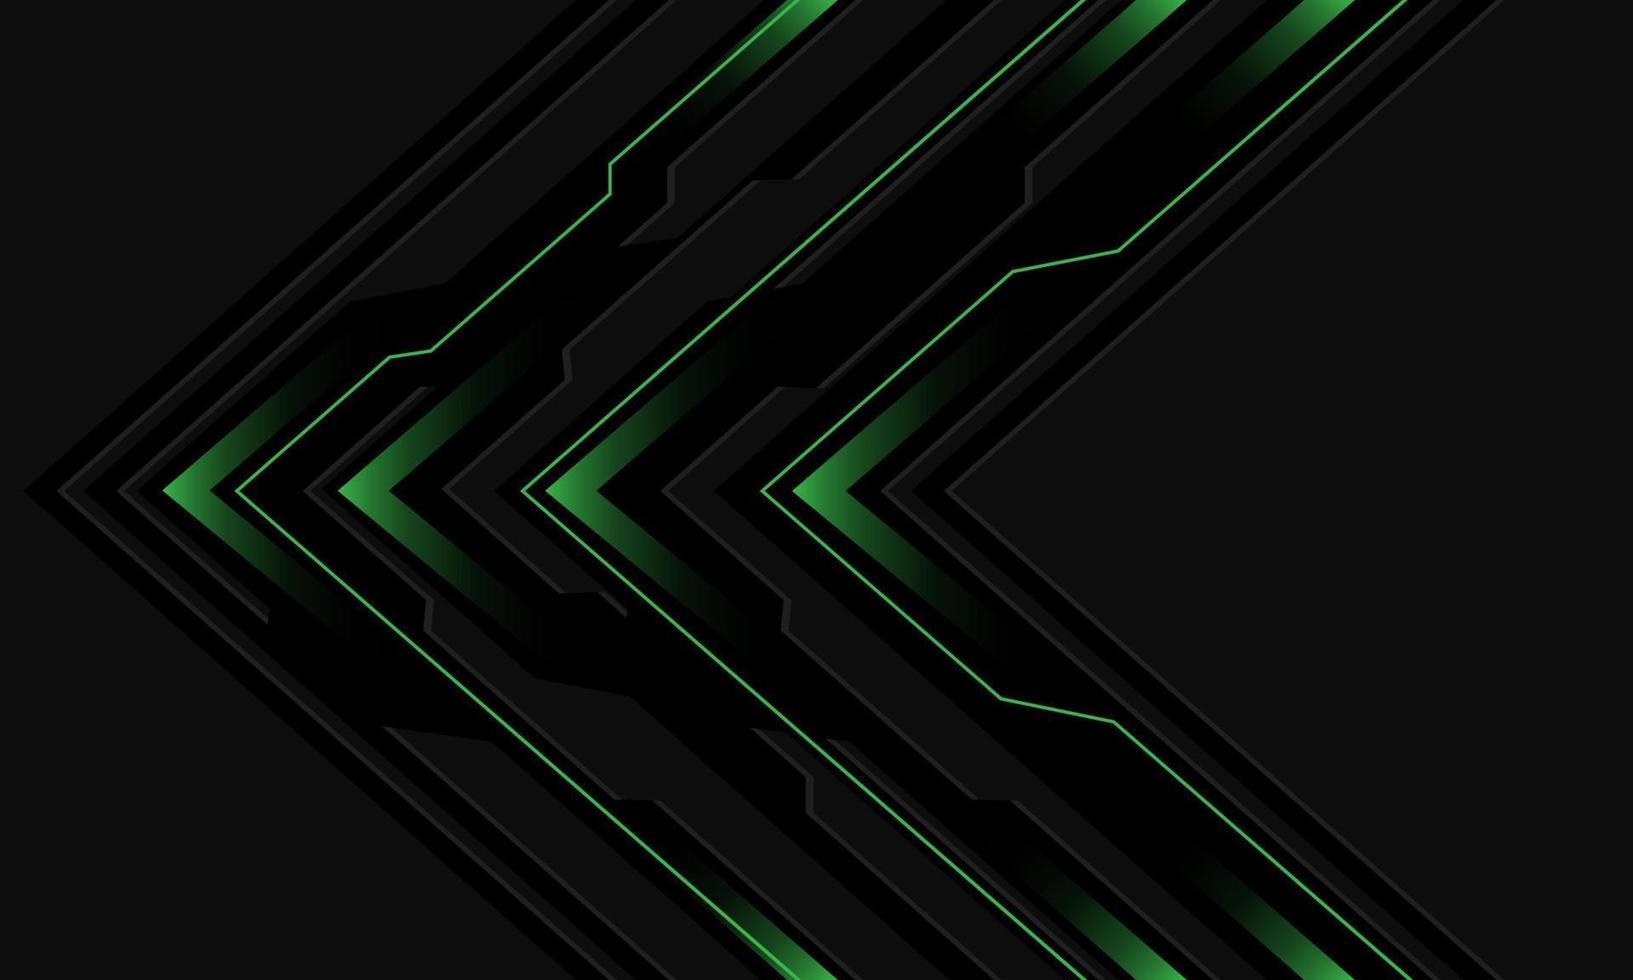 direção de seta cibernética de luz verde de circuito preto abstrato no vetor de fundo de tecnologia futurista moderna de design cinza